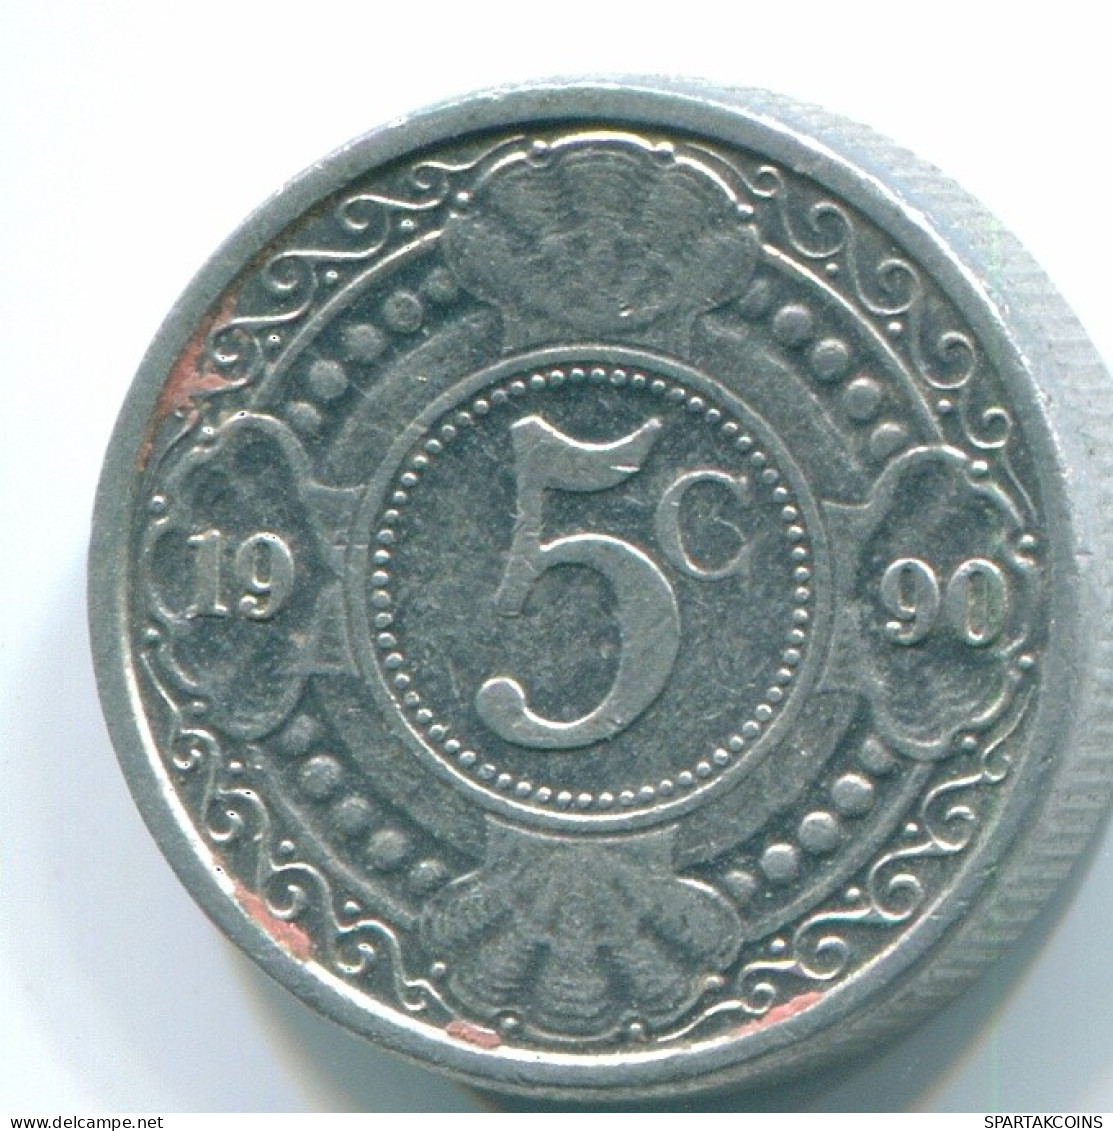 5 CENTS 1990 NIEDERLÄNDISCHE ANTILLEN Aluminium Koloniale Münze #S13710.D.A - Niederländische Antillen